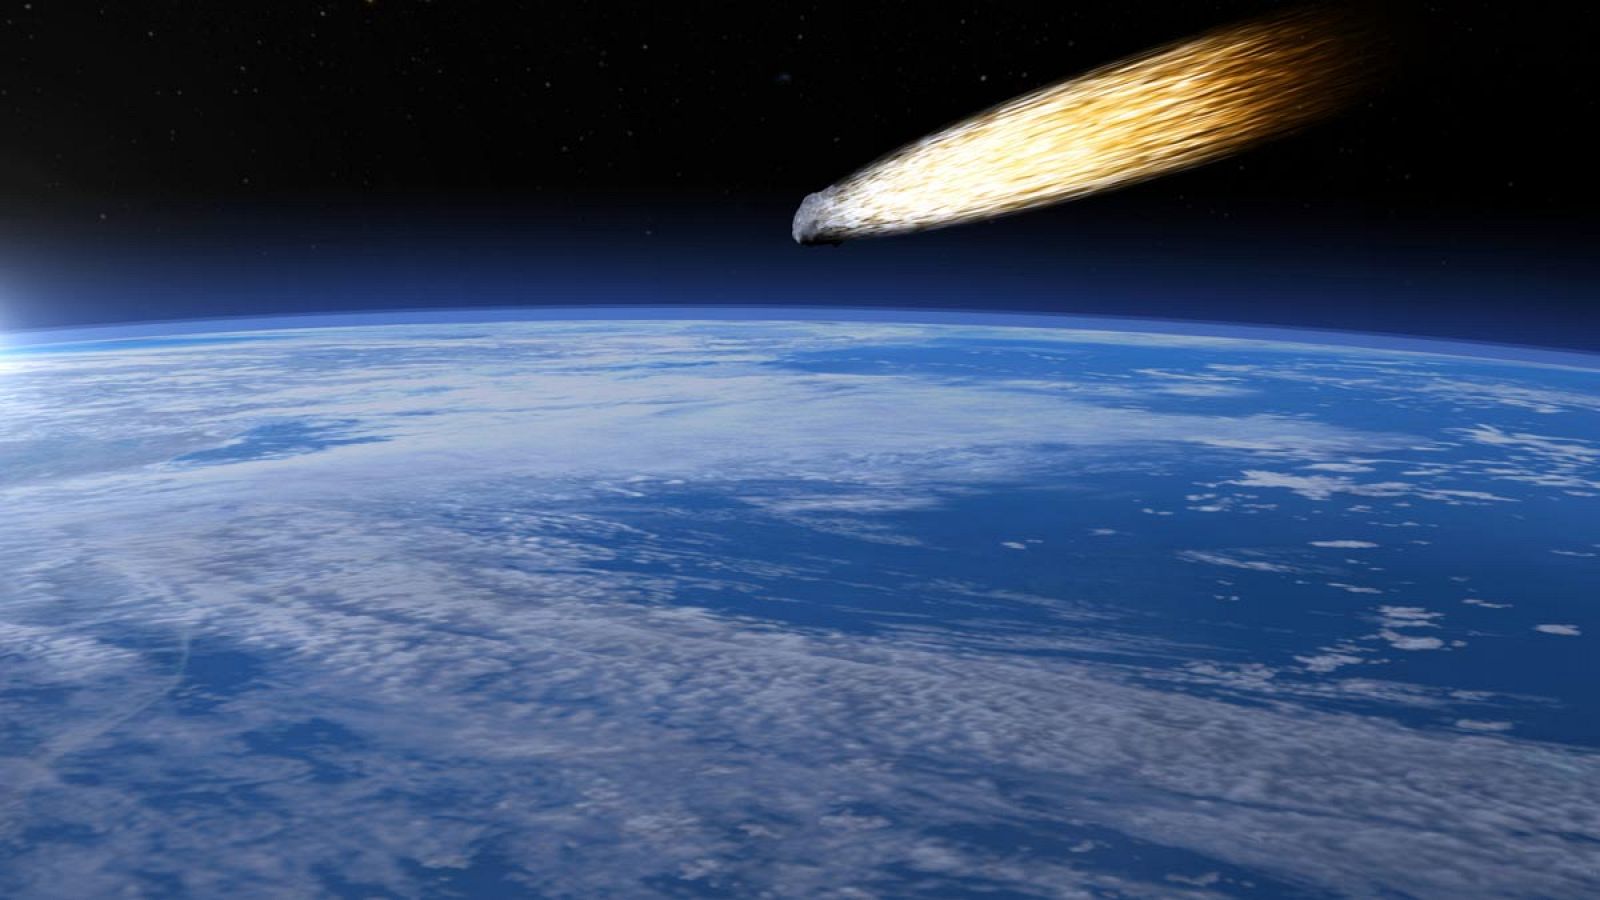 Representación del asteroide que chocó contra la Tierra hace 66 millones de años y exterminó a los dinosaurios.